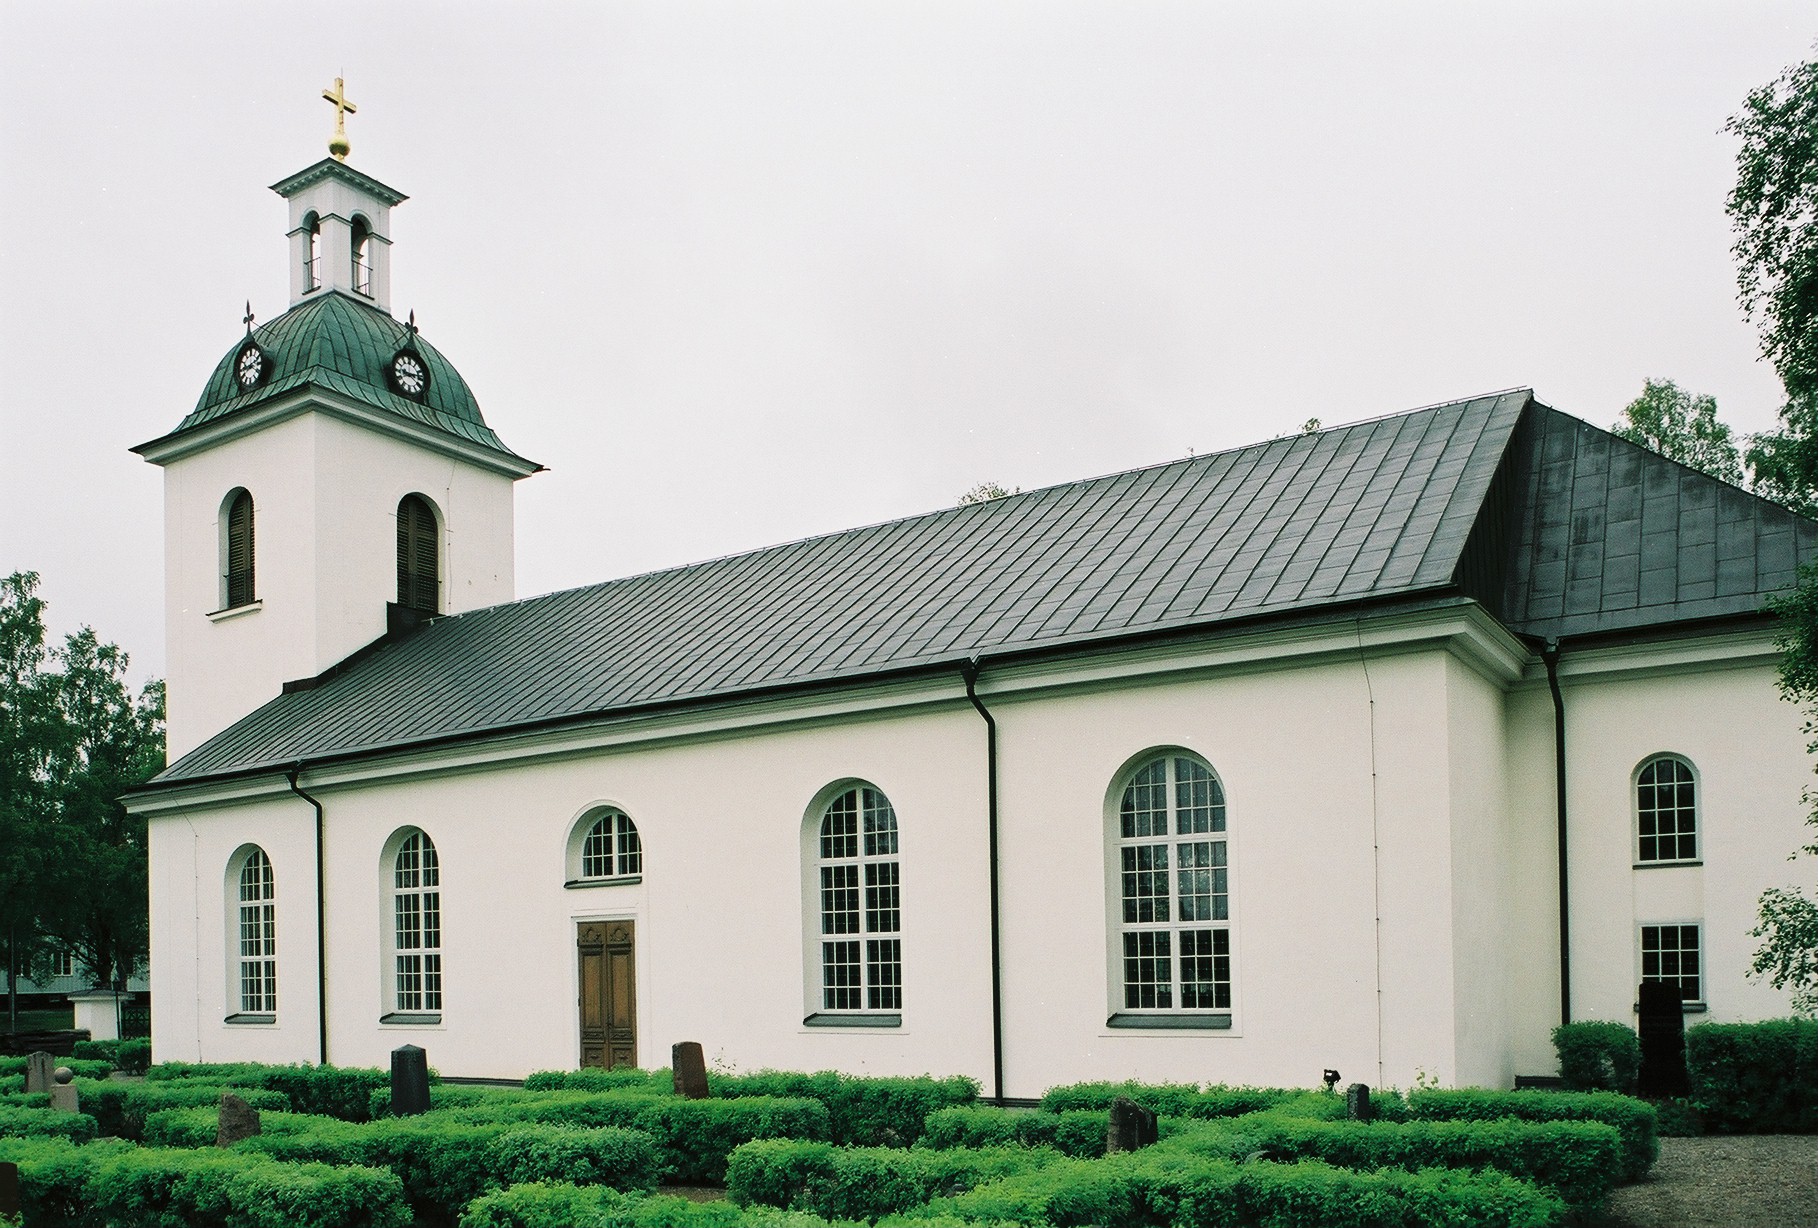 Ströms kyrka, exteriör, södra fasaden/långhuset.

Bilderna är tagna av Martin Lagergren & Emelie Petersson, bebyggelseantikvarier vid Jämtlands läns museum, i samband med inventeringen, 2004-2005.